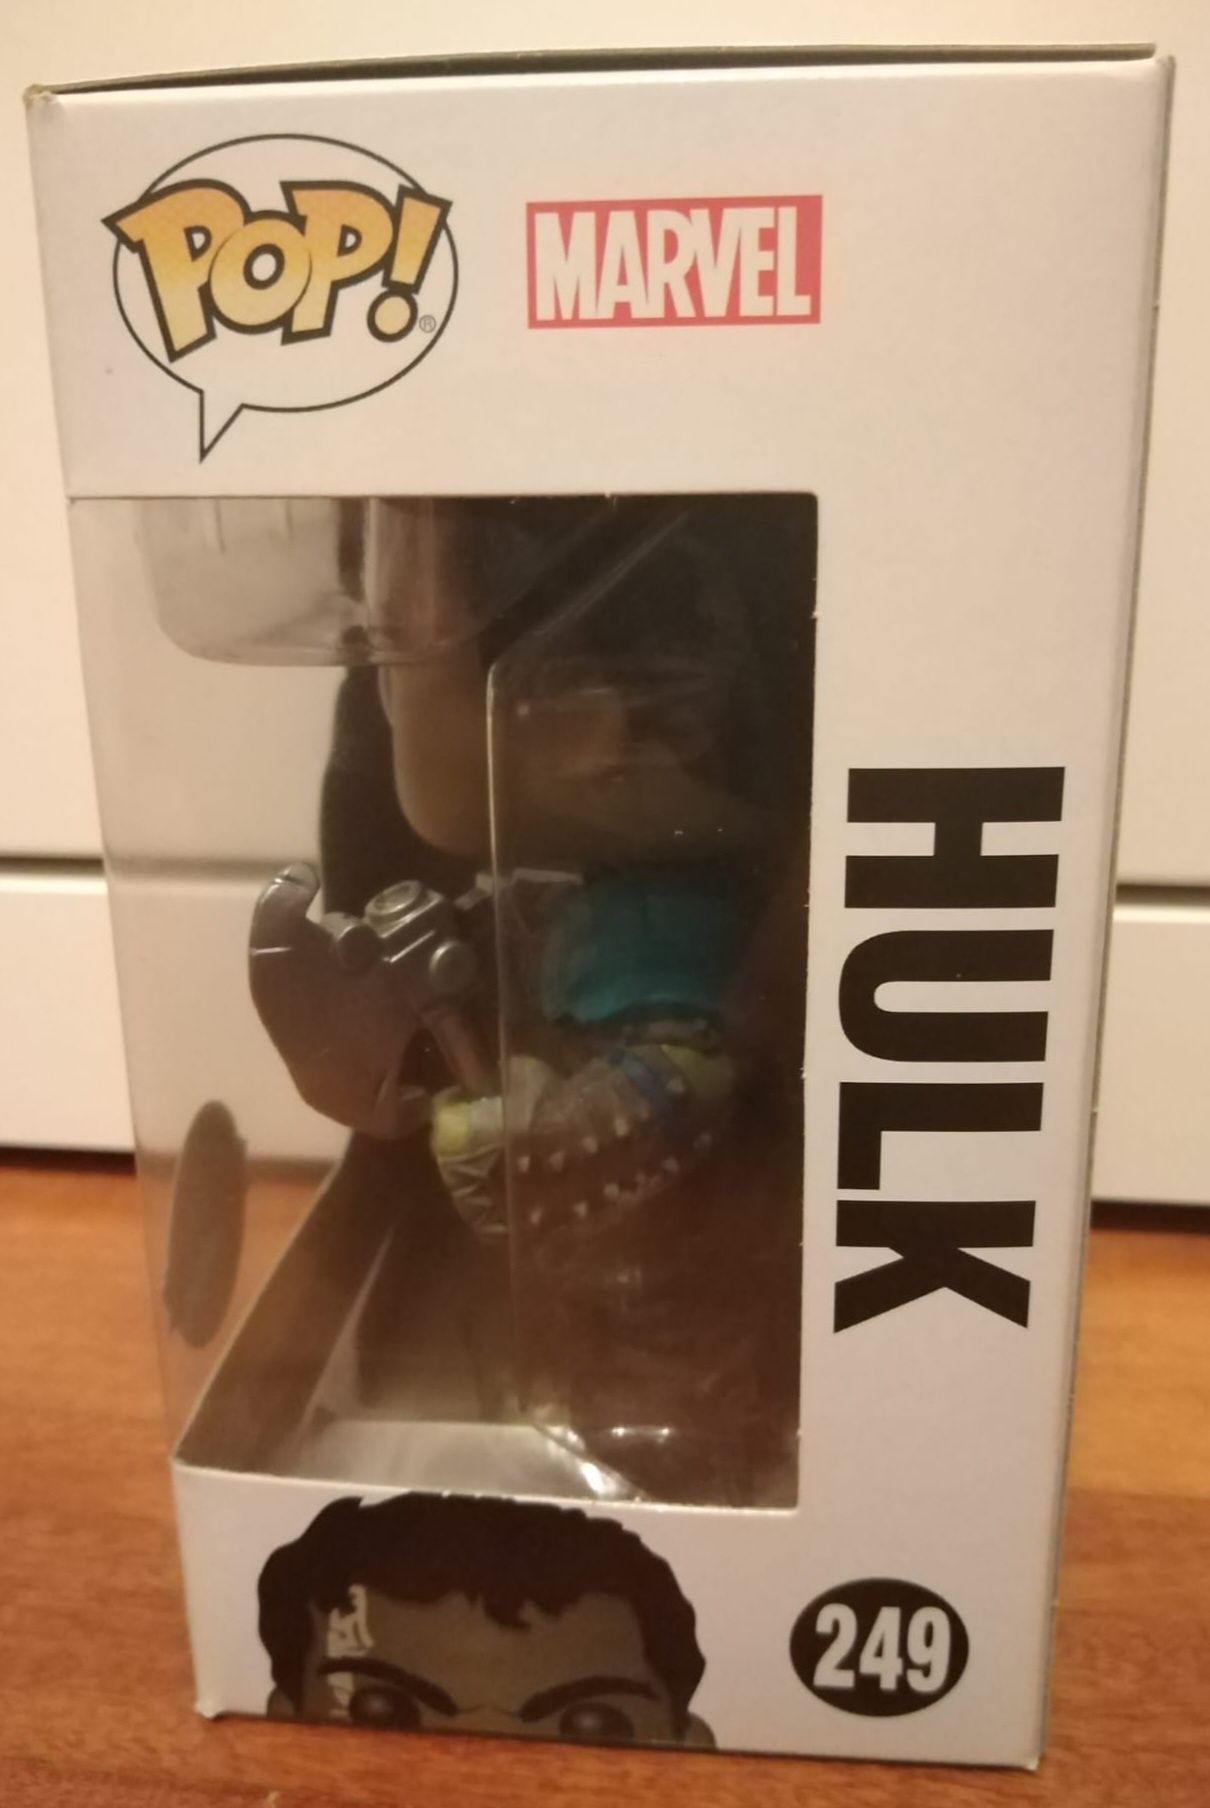 Hulk (Special Edition) - Funko pop Thor Ragnarok